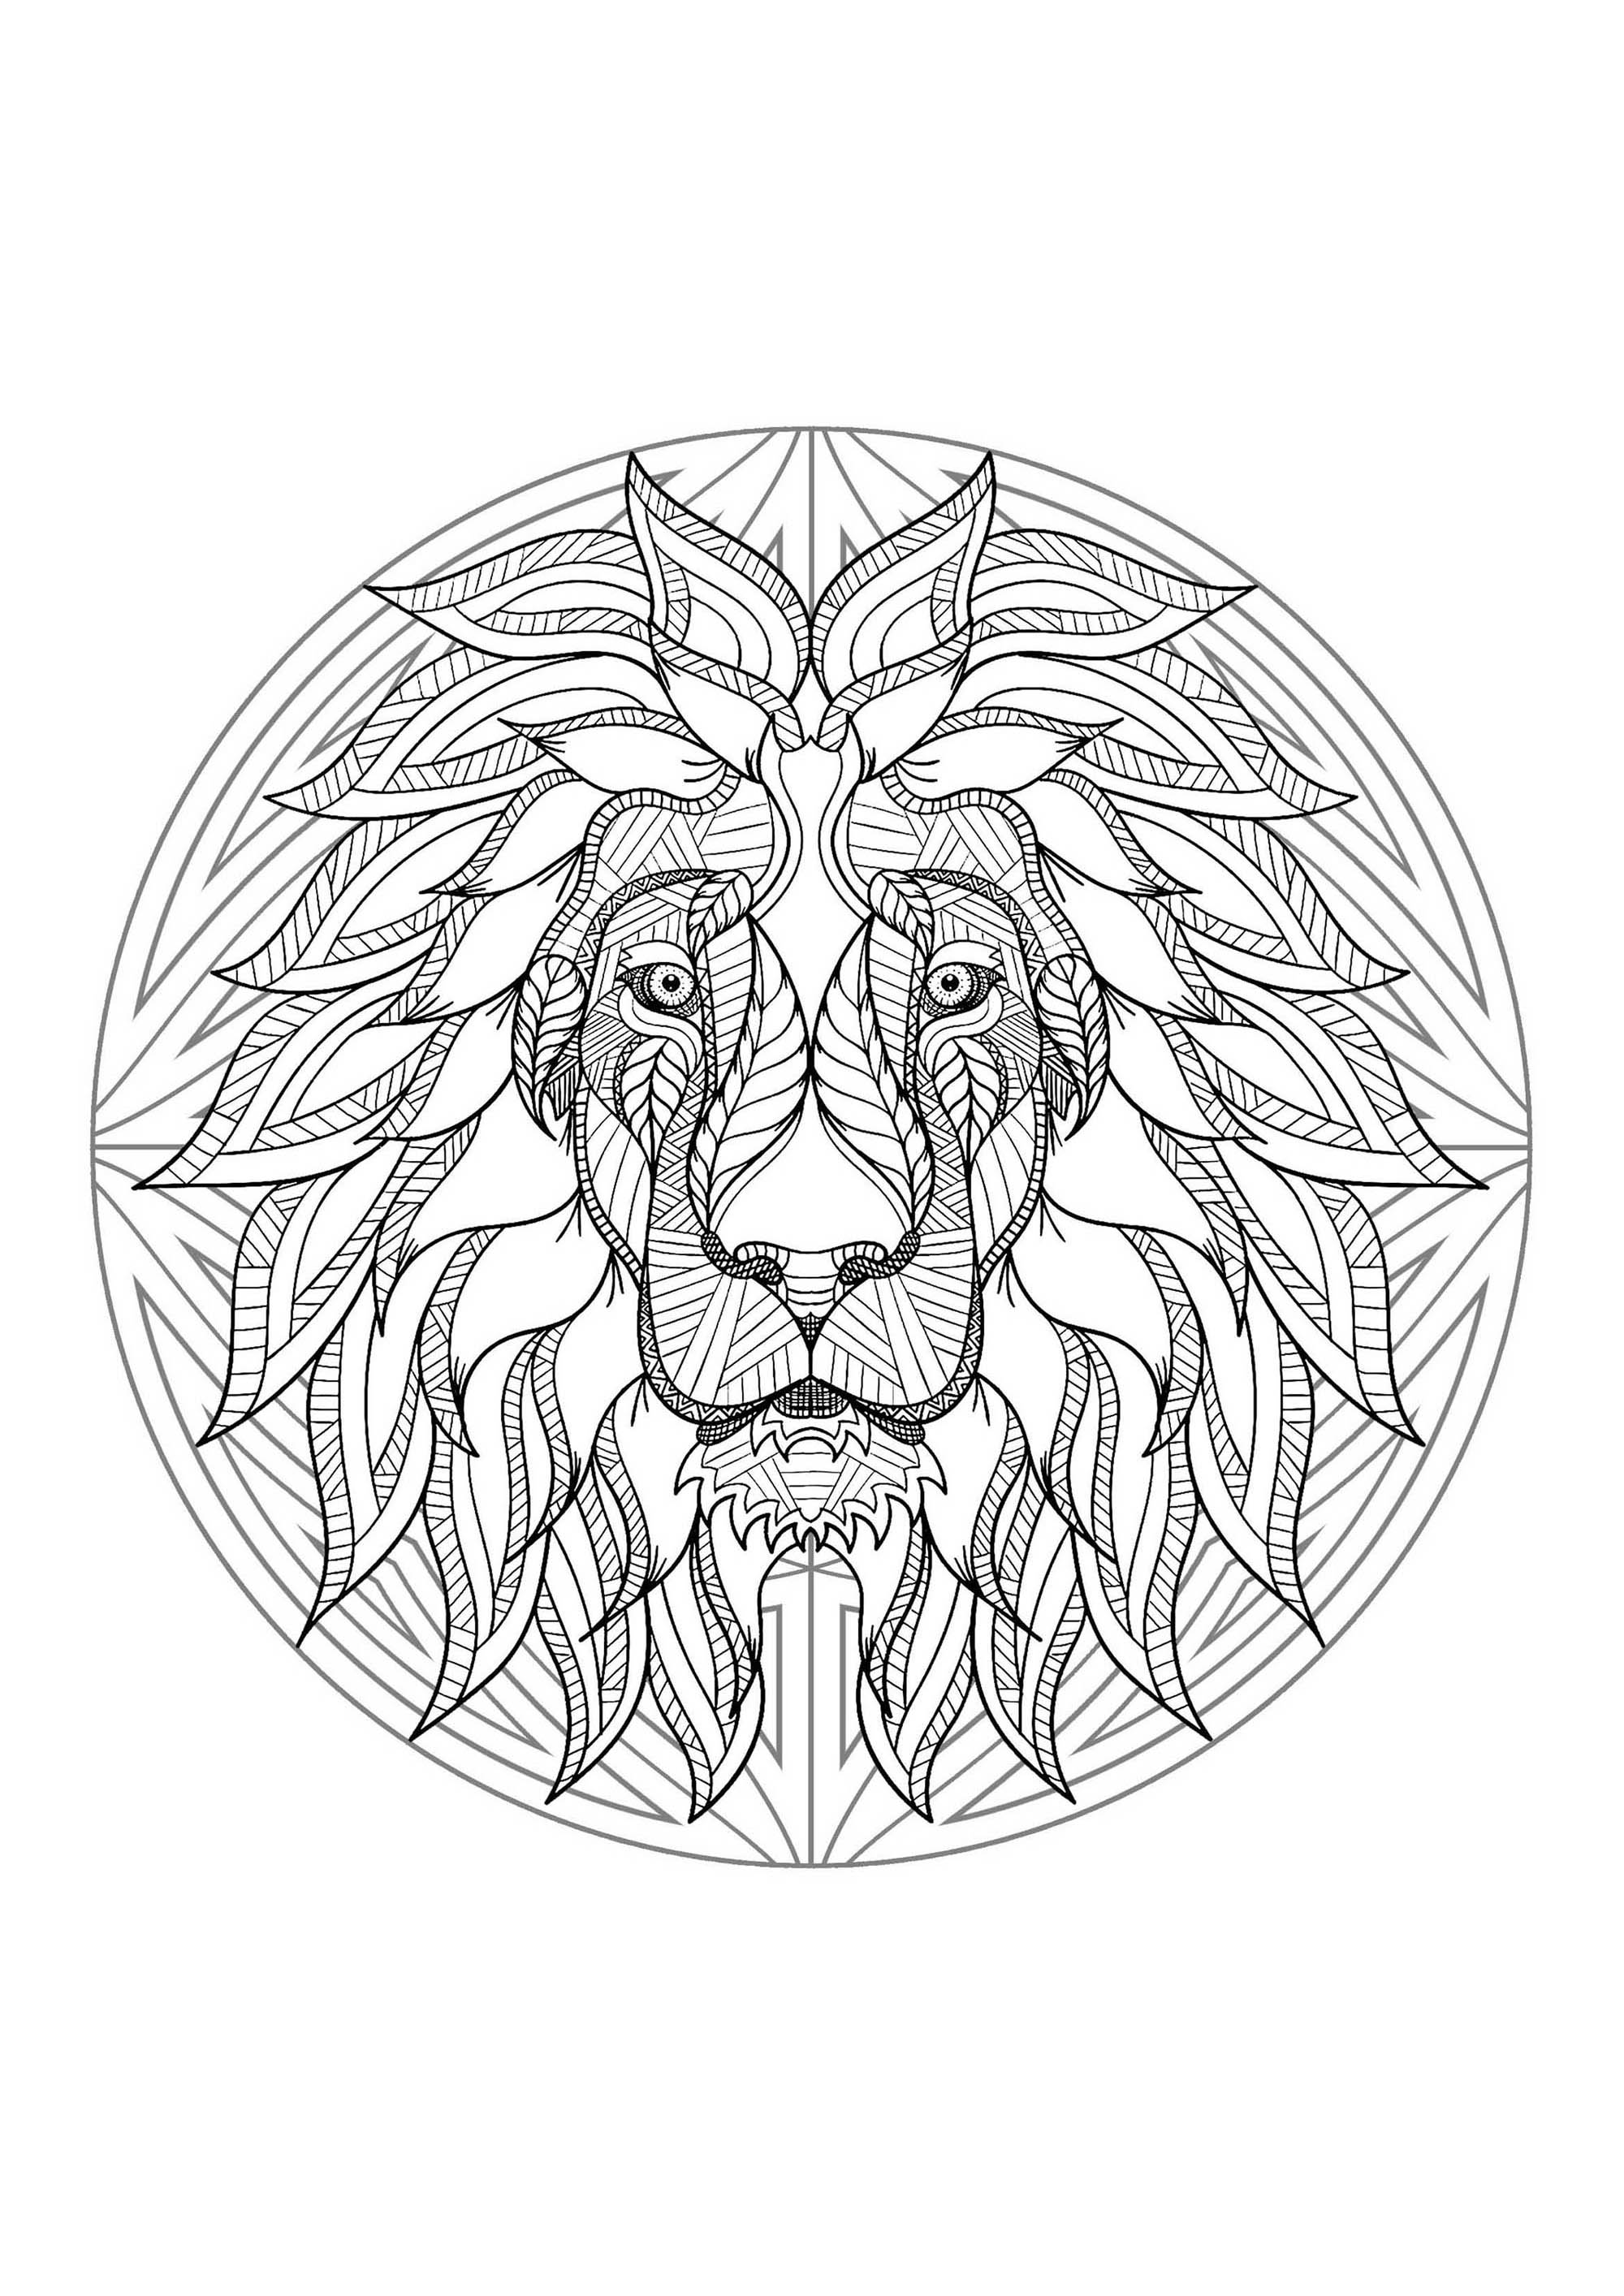 Una testa di leone in un mandala. Un vero capolavoro! Questa colorazione rappresenta una testa di leone perfettamente integrata in un complesso e ricco mandala.